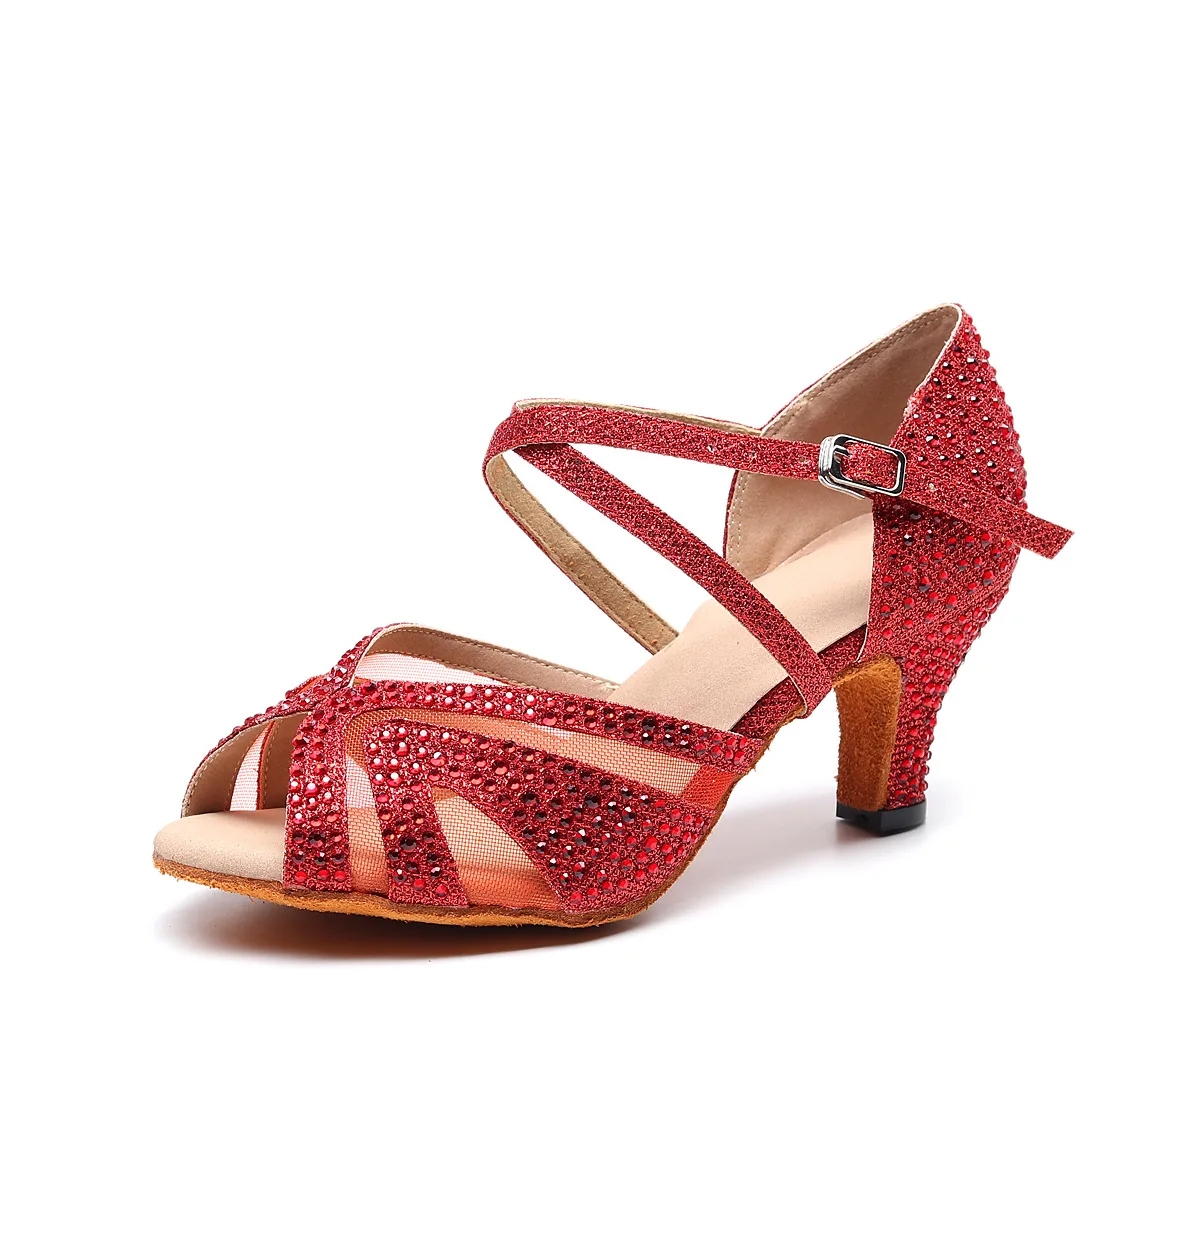 Серебристые, синие, черные, красные стразы, туфли для латинских танцев, женские туфли для бальных танцев, туфли для вальса на высоком каблуке 9 см, распродажа - Цвет: Red 6cm heel